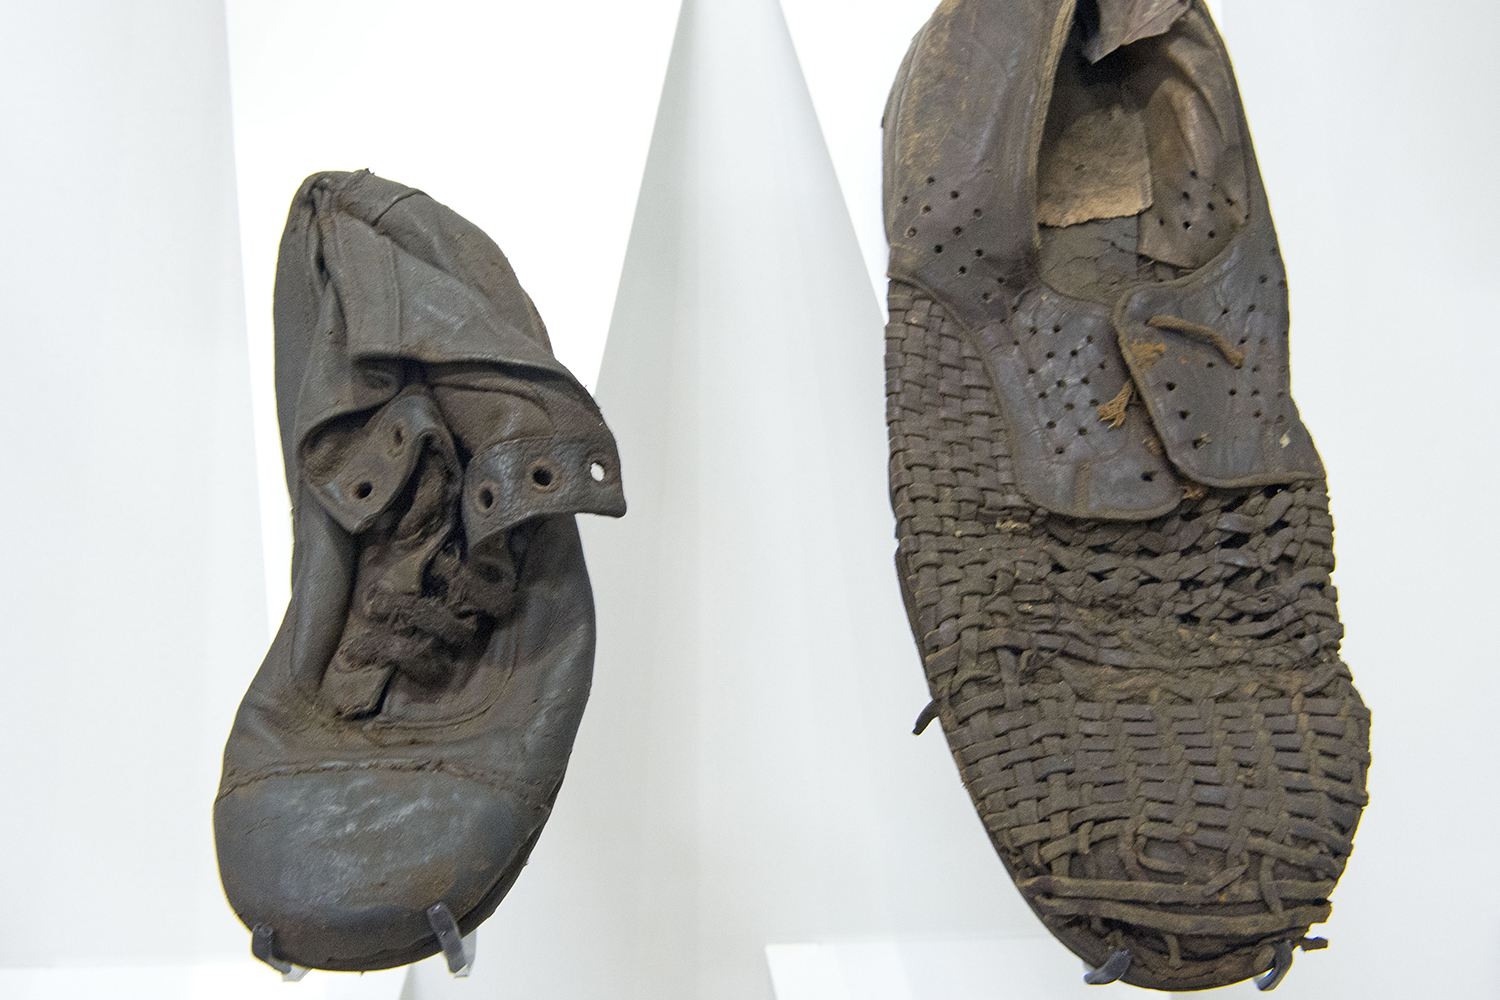 Roban ocho zapatos que pertenecían a victimas del Holocausto